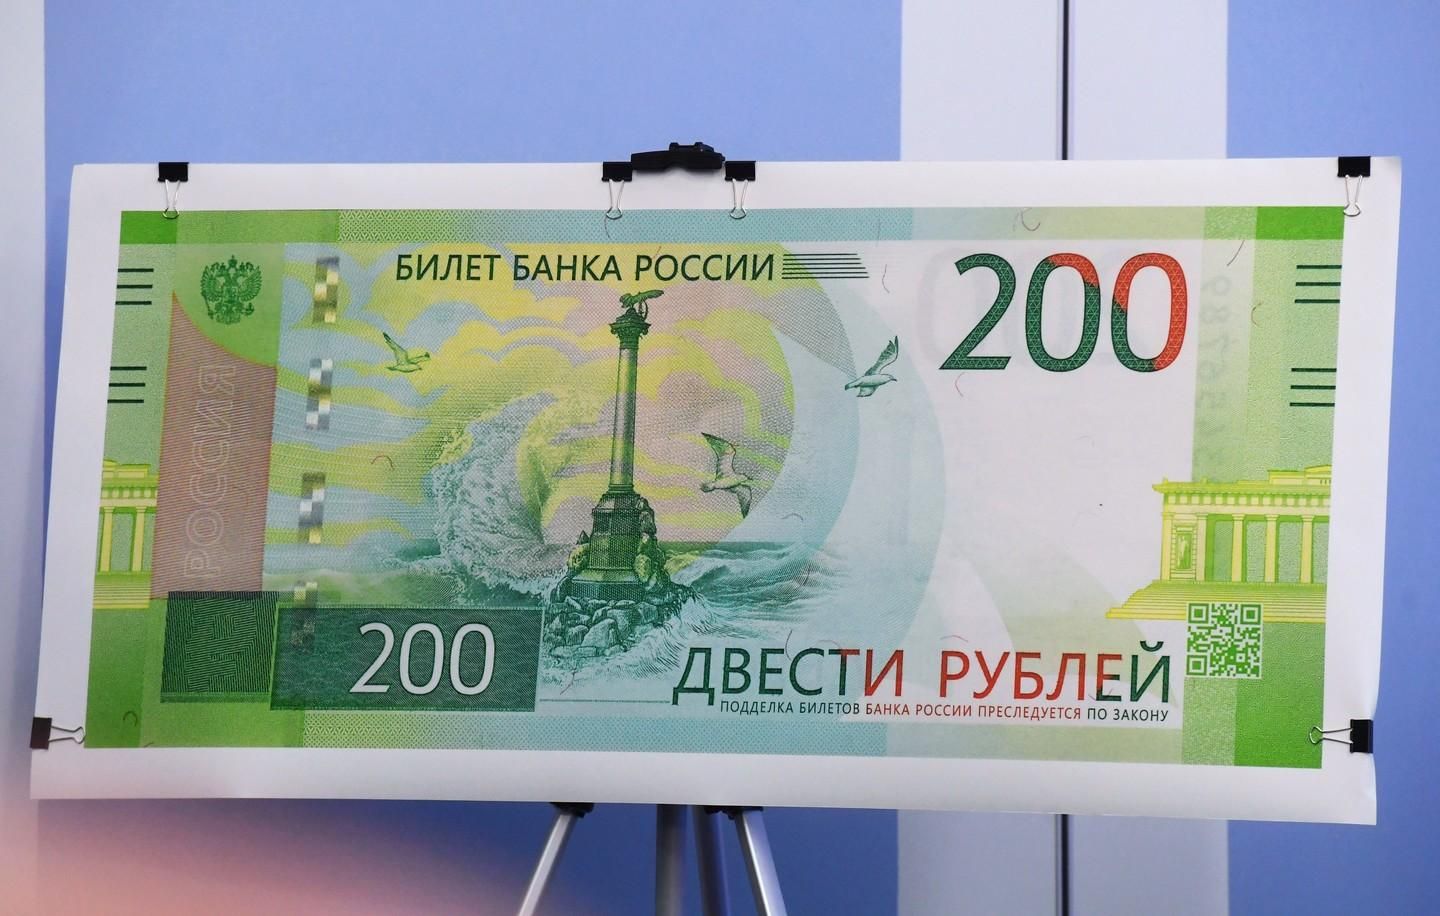 Образец банкноты номиналом 200 рублей. Фото: ©РИА Новости/Алексей Куденко